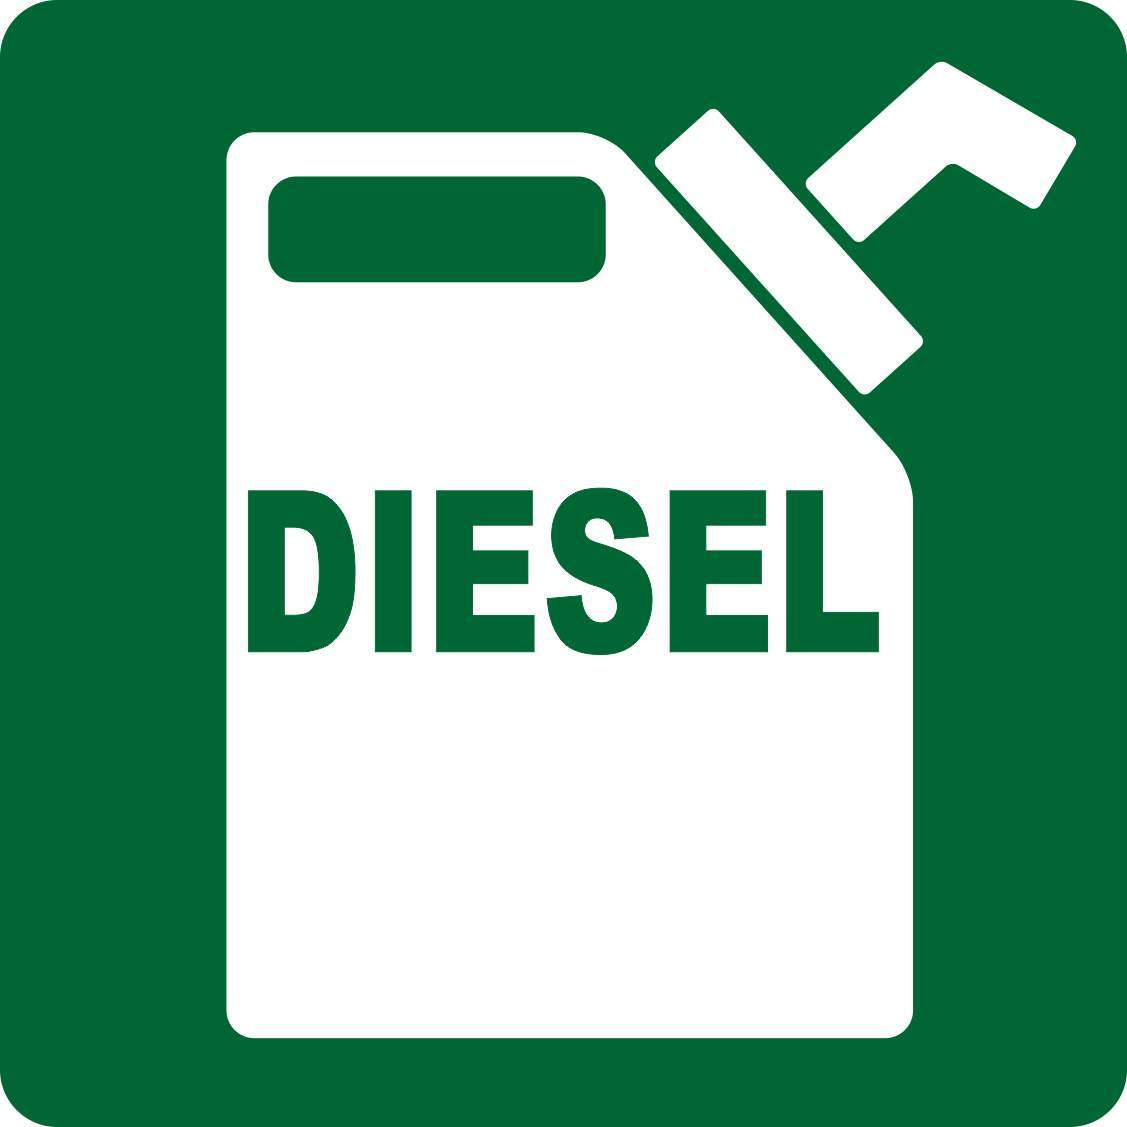 3in x 3in Diesel Sticker Vinyl Decals Stickers Fuel Safety Truck Decal